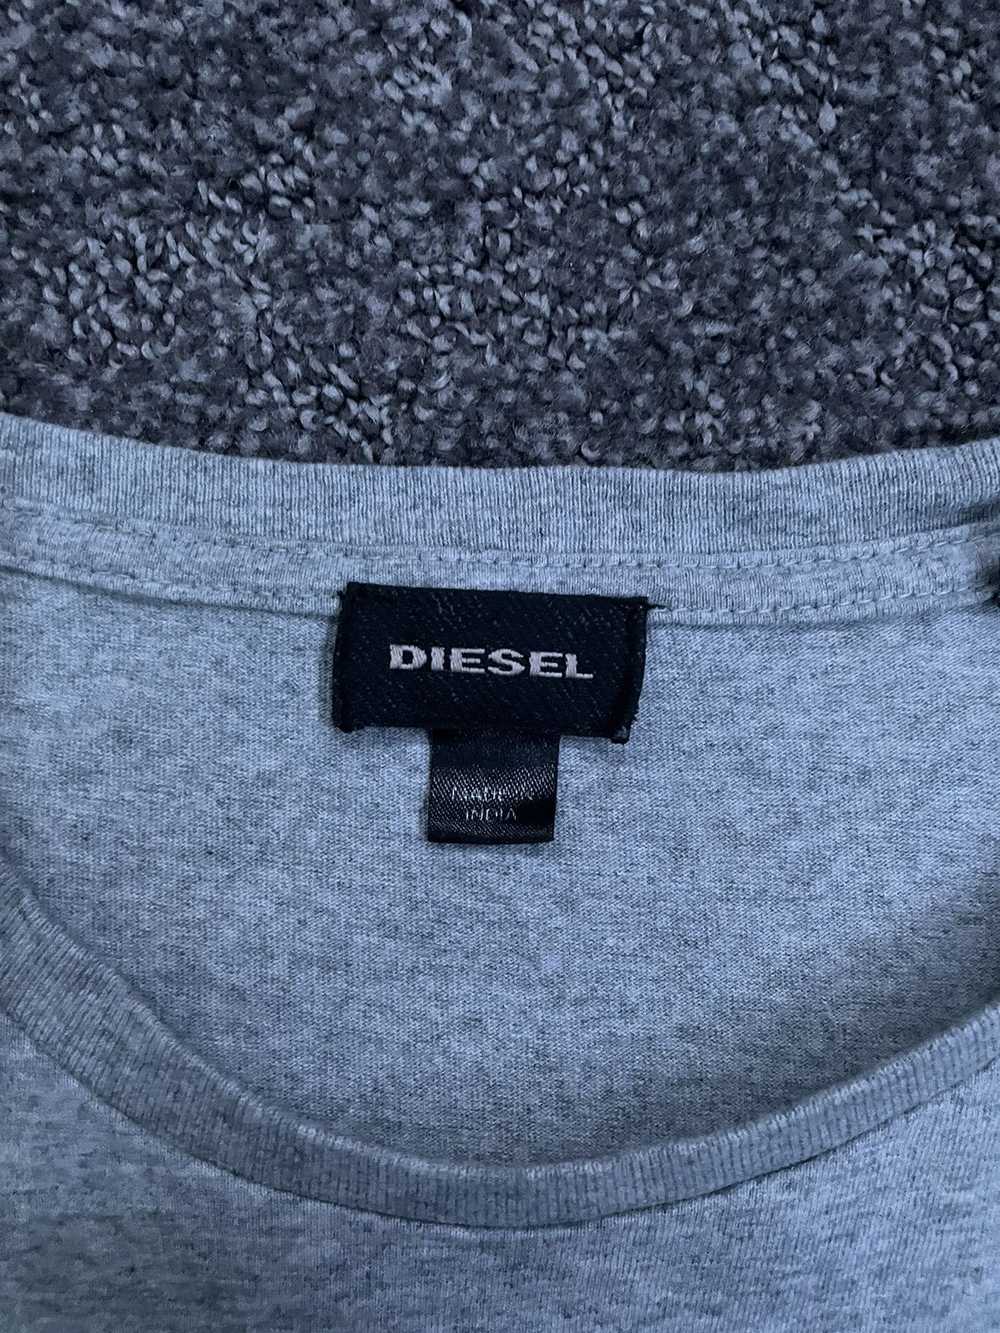 Diesel Diesel Skull Tee Shirt - image 2